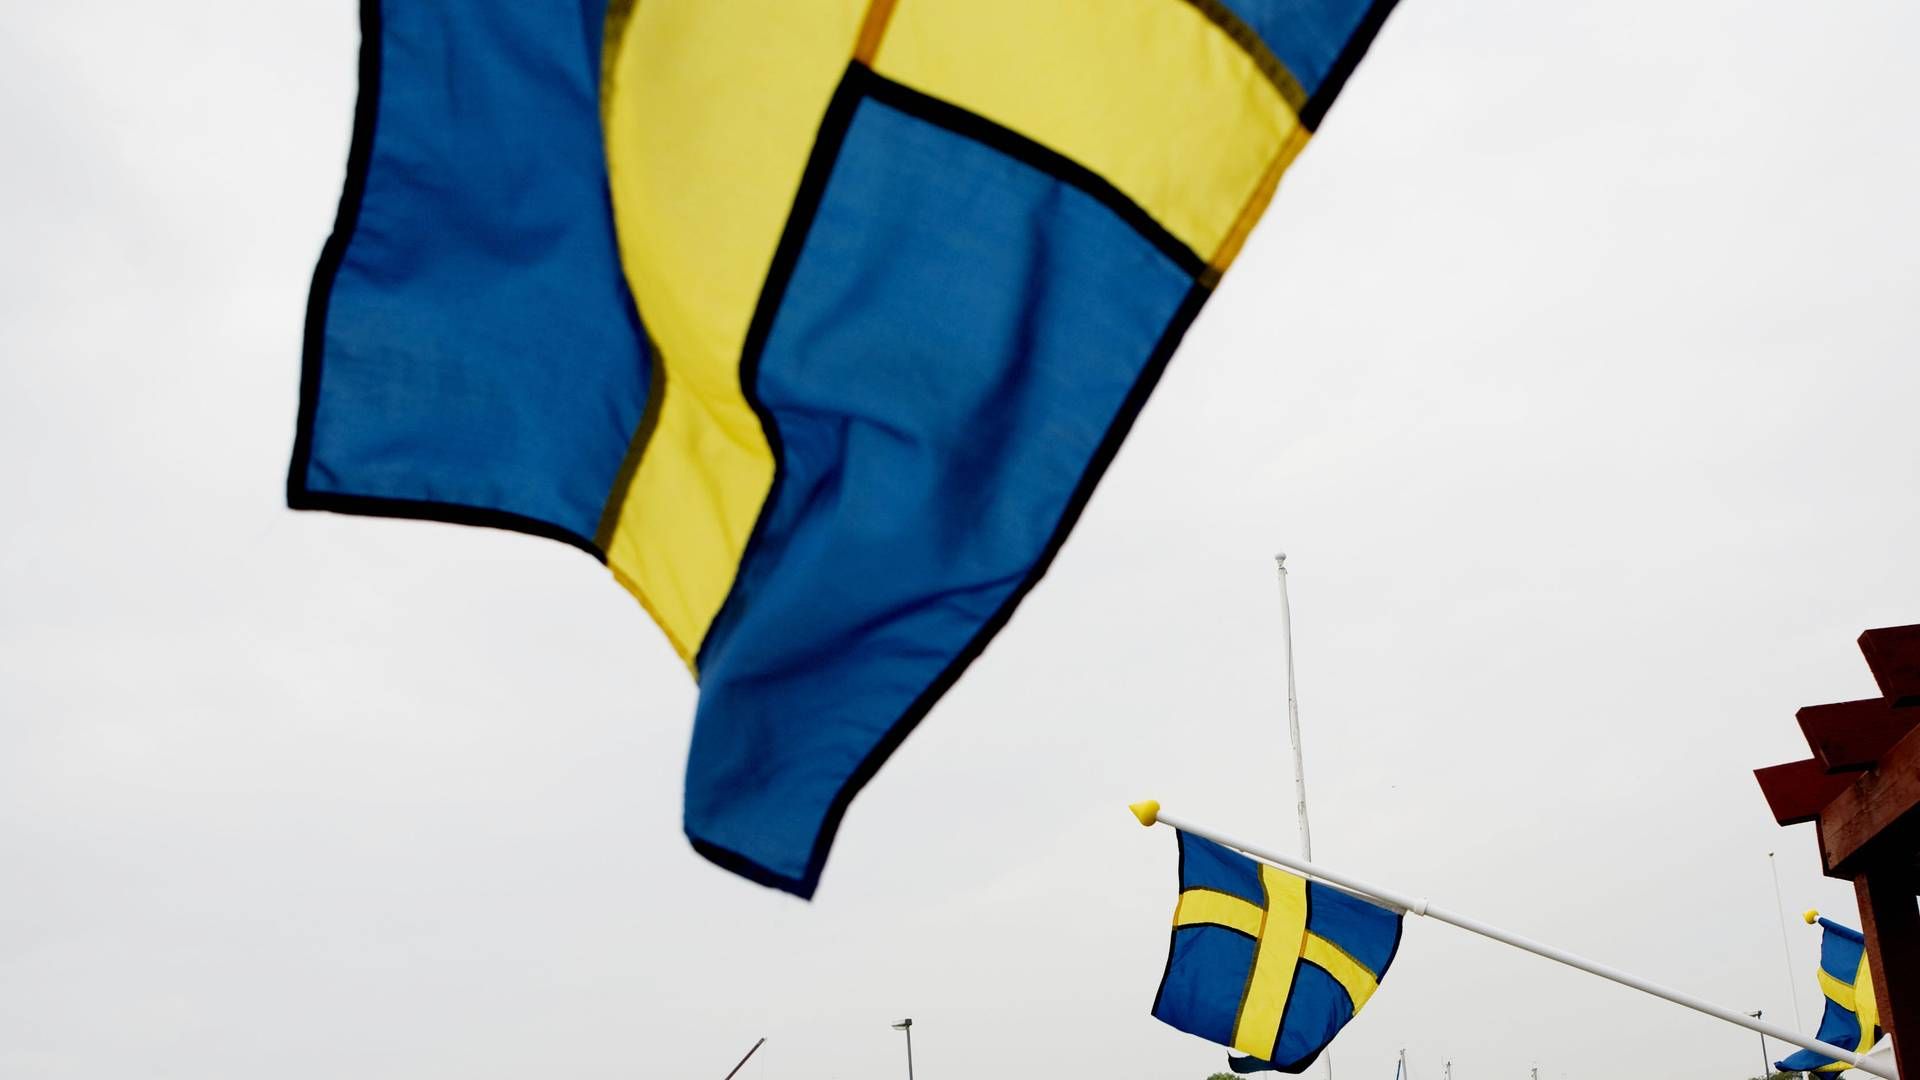 Sverige fikk en real knekk i BNP i andre kvartal - men ikke så ille som andre land med strengere smitteregler. | Foto: Carsten Ingemann/IND